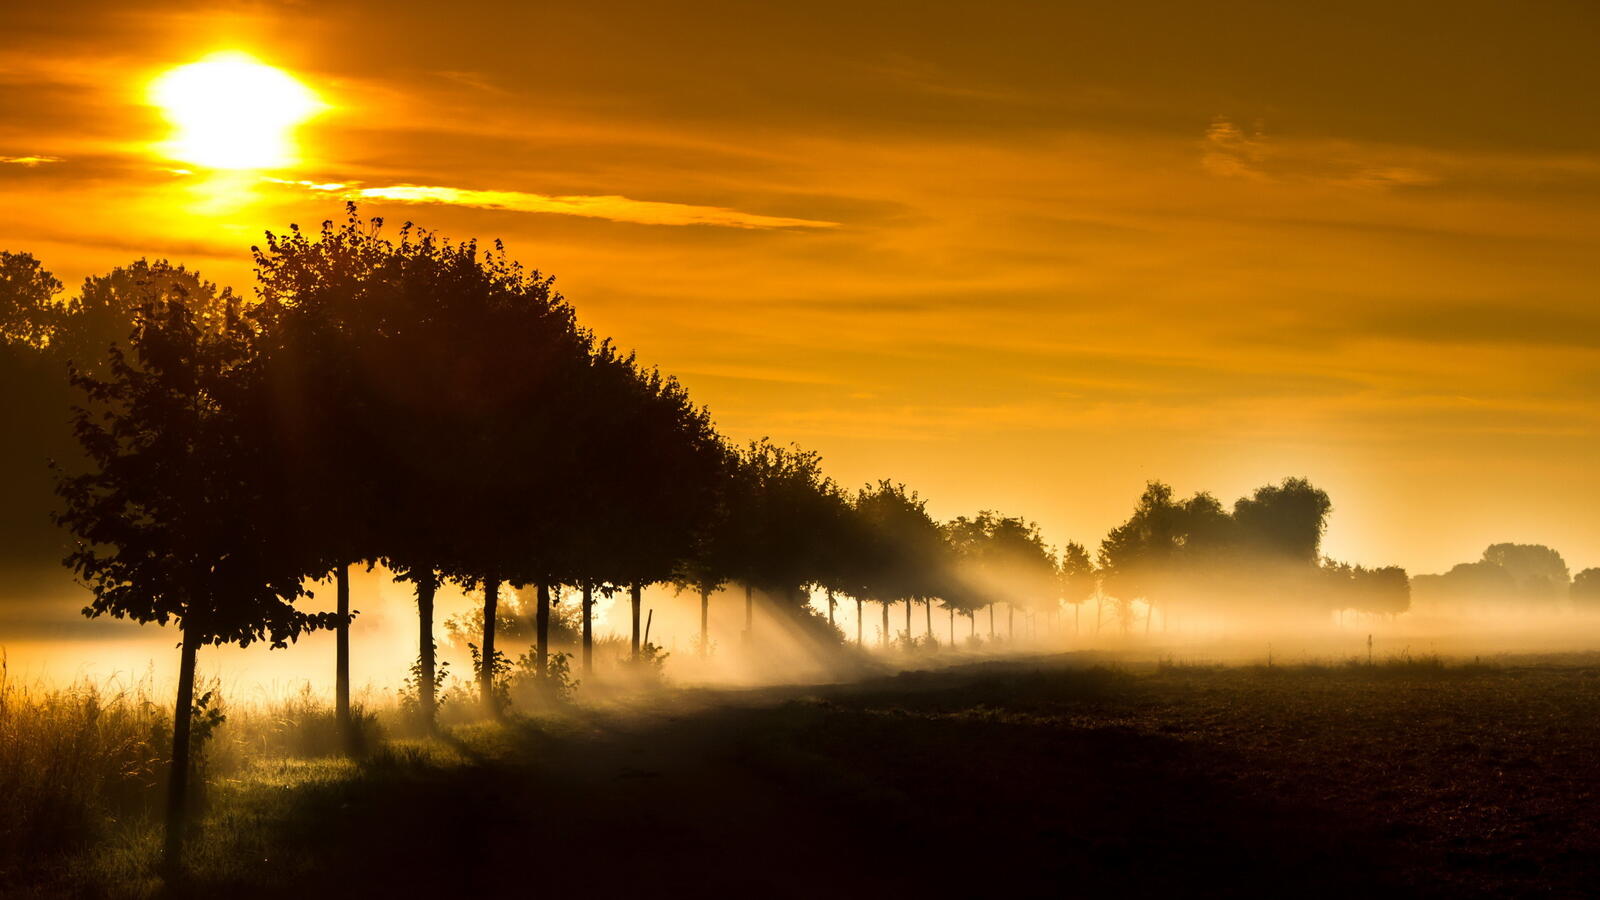 Бесплатное фото Деревья на фоне туманного заката